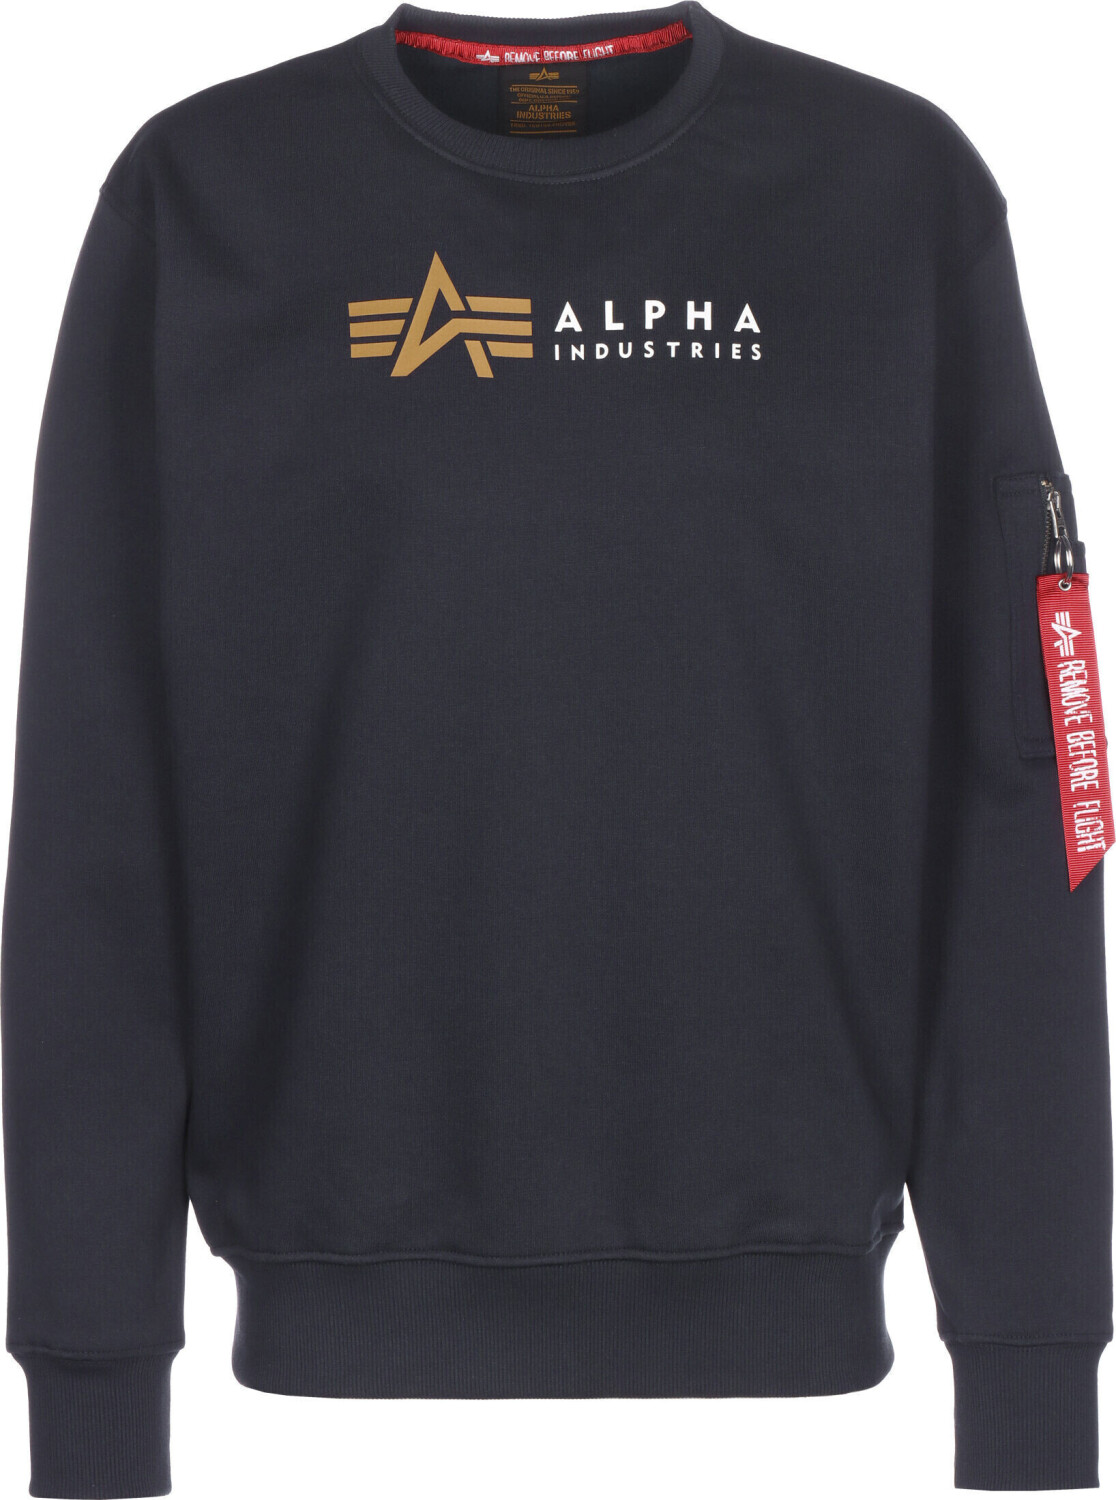 desde idealo Label Industries 46,00 Compara en € Sweater (118312) Alpha precios | Alpha